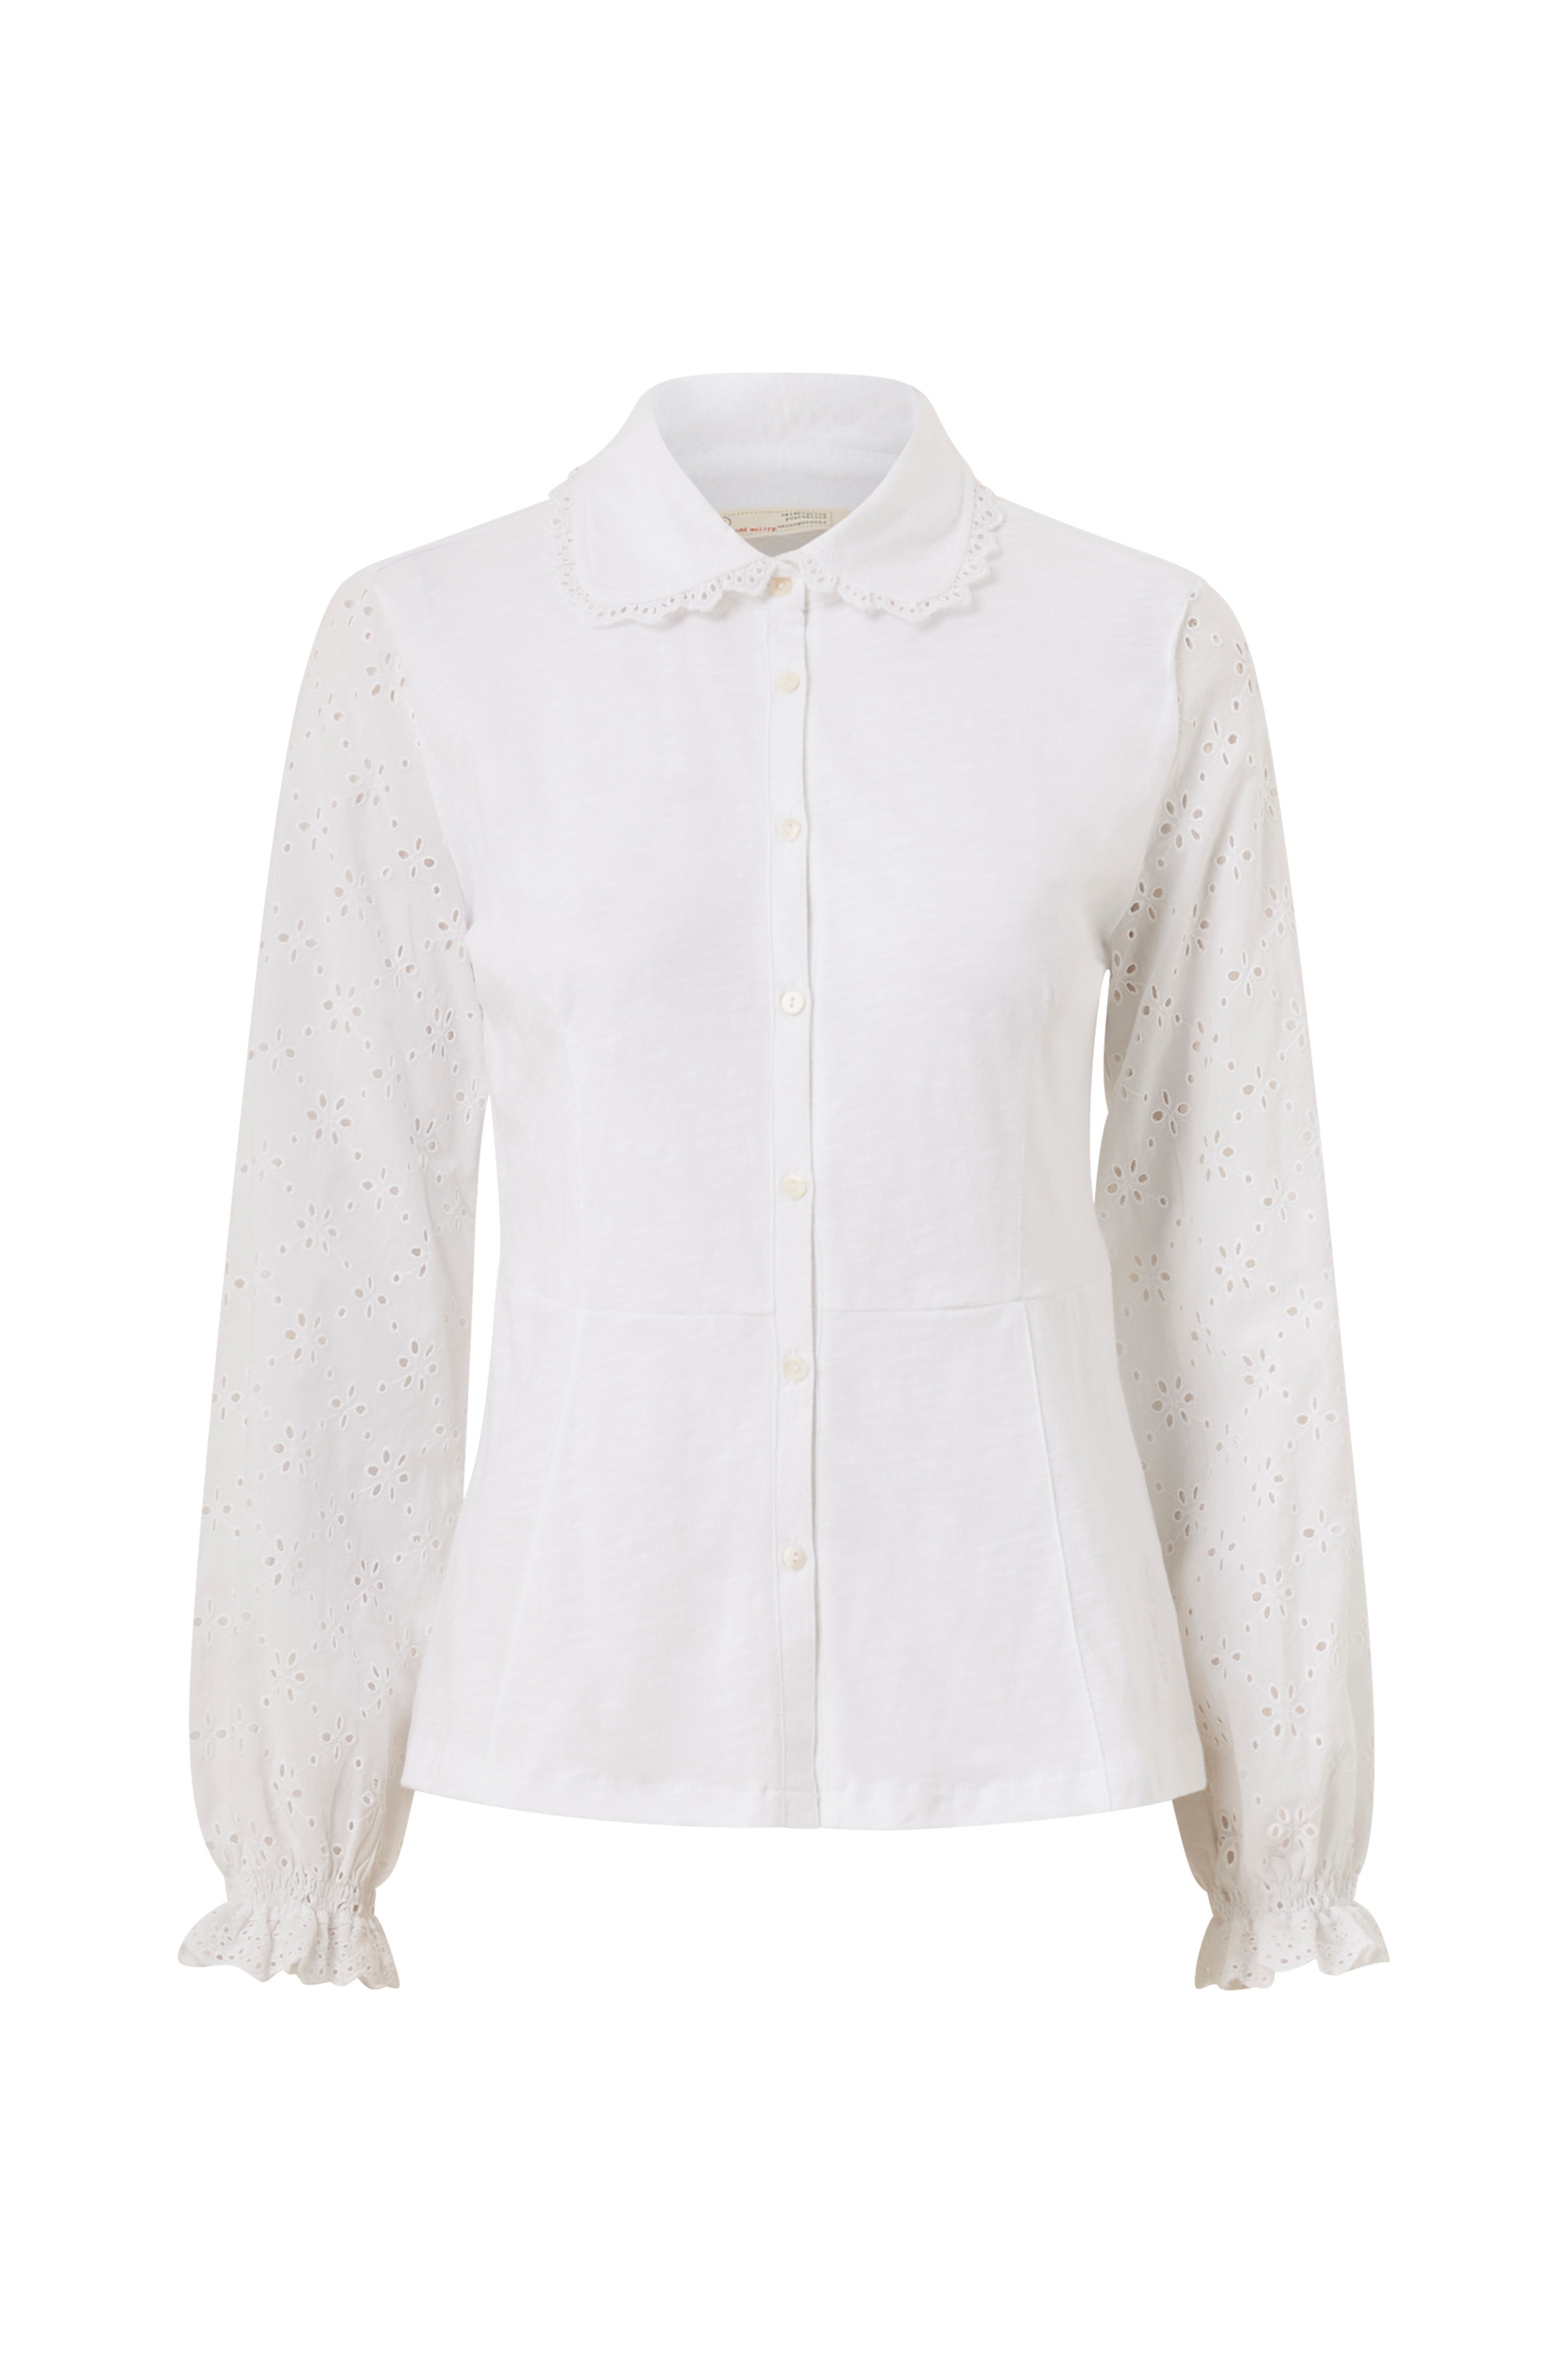 fred sum Koncession Odd Molly - Bluse Cassandra - Hvid - 42 - Skjorter - Tøj til kvinder  (31139347)